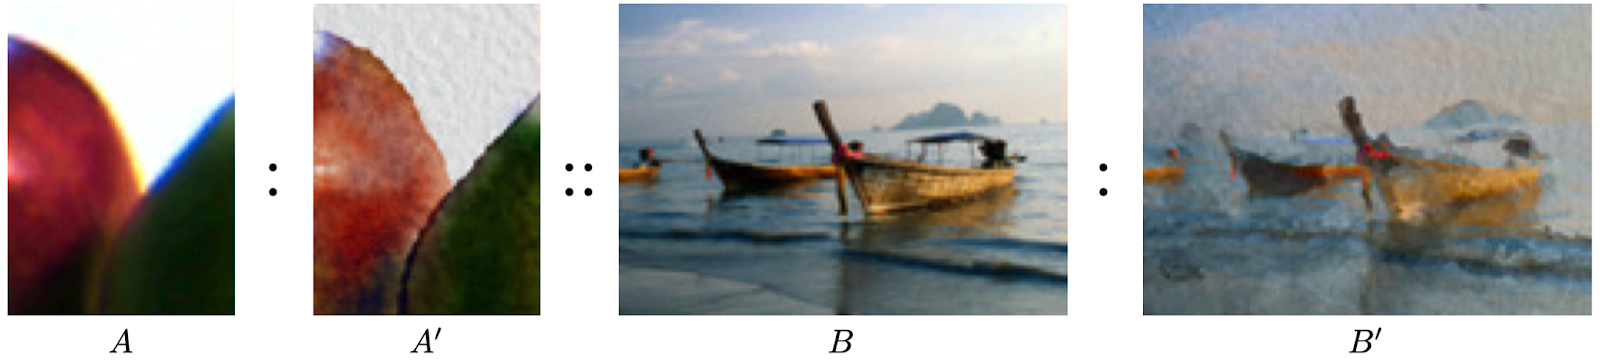 Визуализация концепта Image Analogies. A и A' исходное изображение до и после наложения фильтра (в данном случае фильтр представляет собой эффект акварели), B – изображение, на которое будет перенесён эффект фильтра, B' – результат переноса [7]